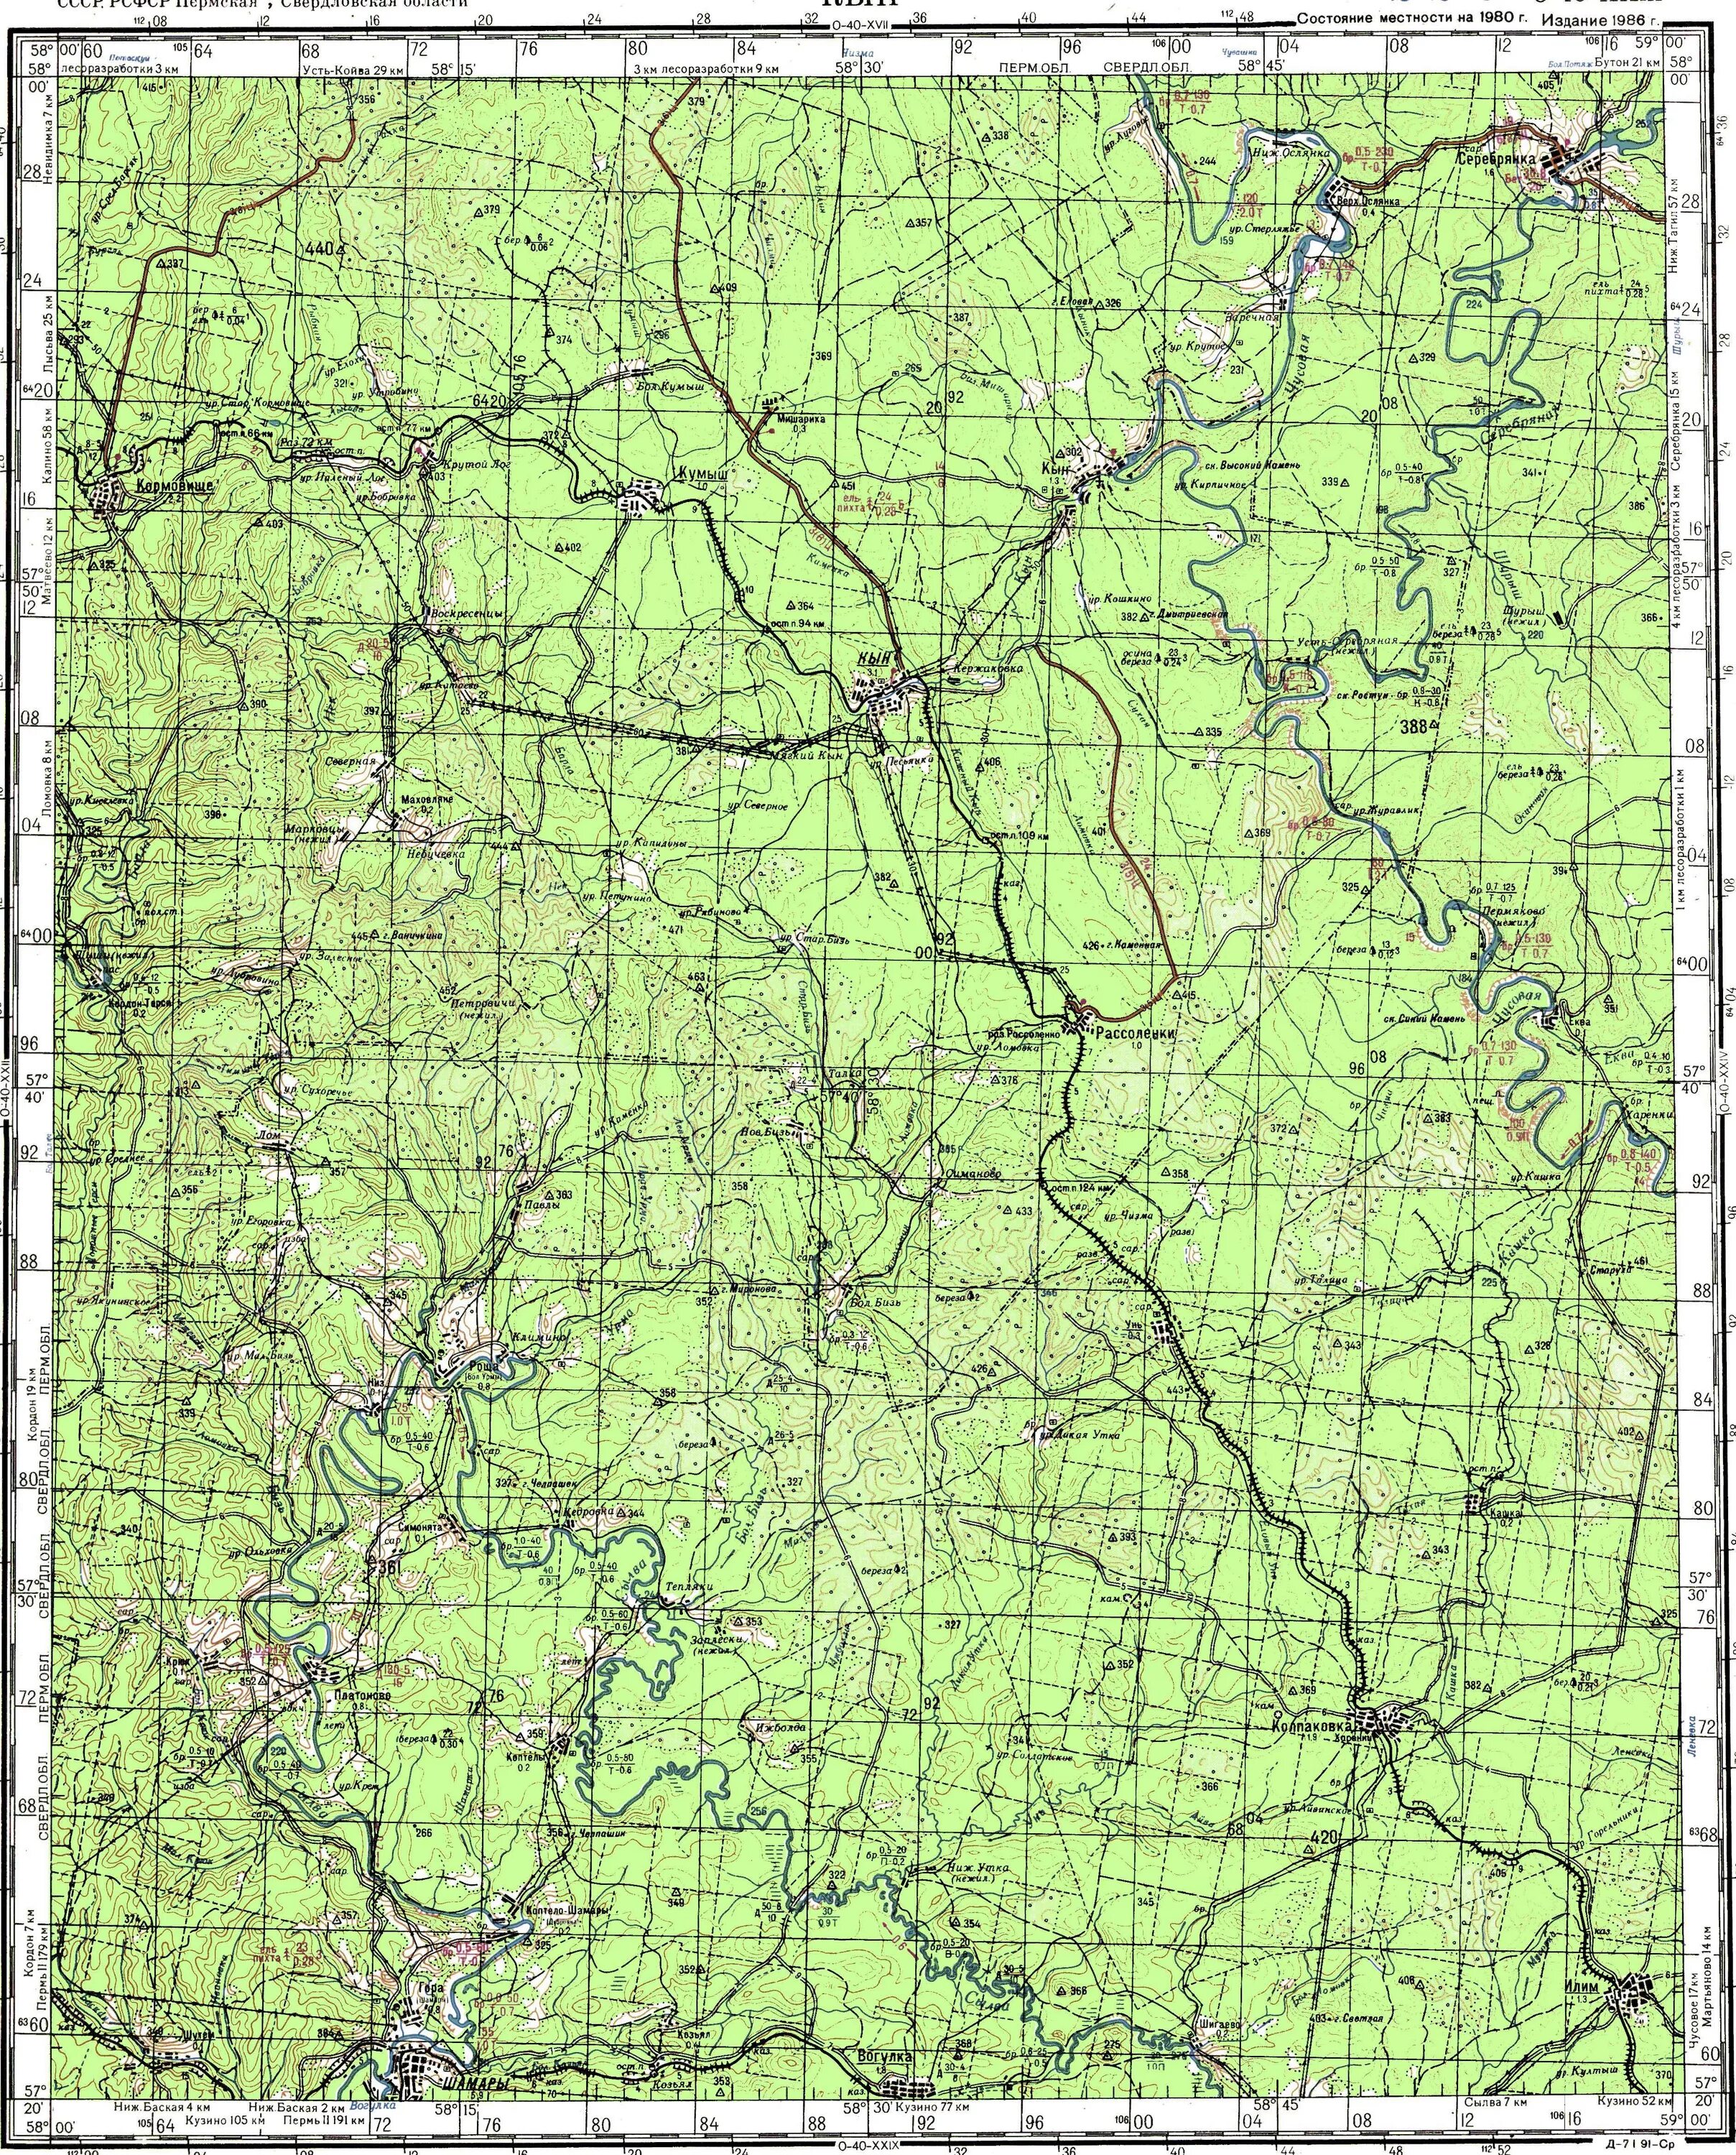 Кын на карте. Кын Пермский край на карте. Кын на карте Свердловской области. Карта Гайнского района. O 40 б